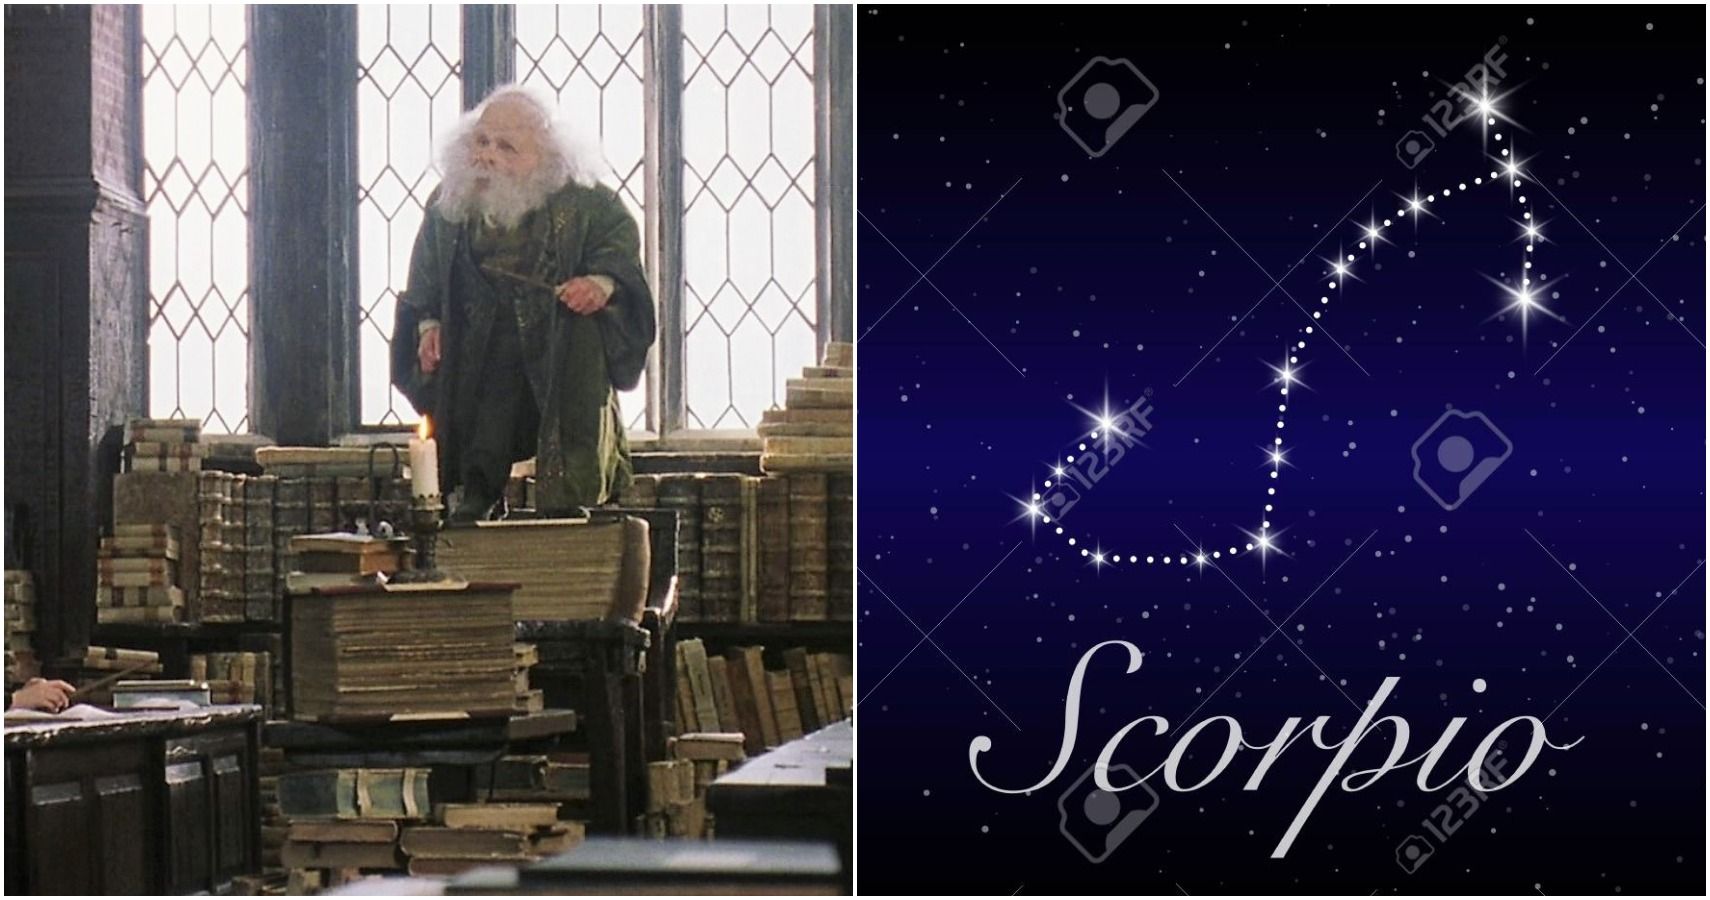 Harry Potter: 5 temas / actividades de Hogwarts Escorpio sobresaliría (5 fracasarían)